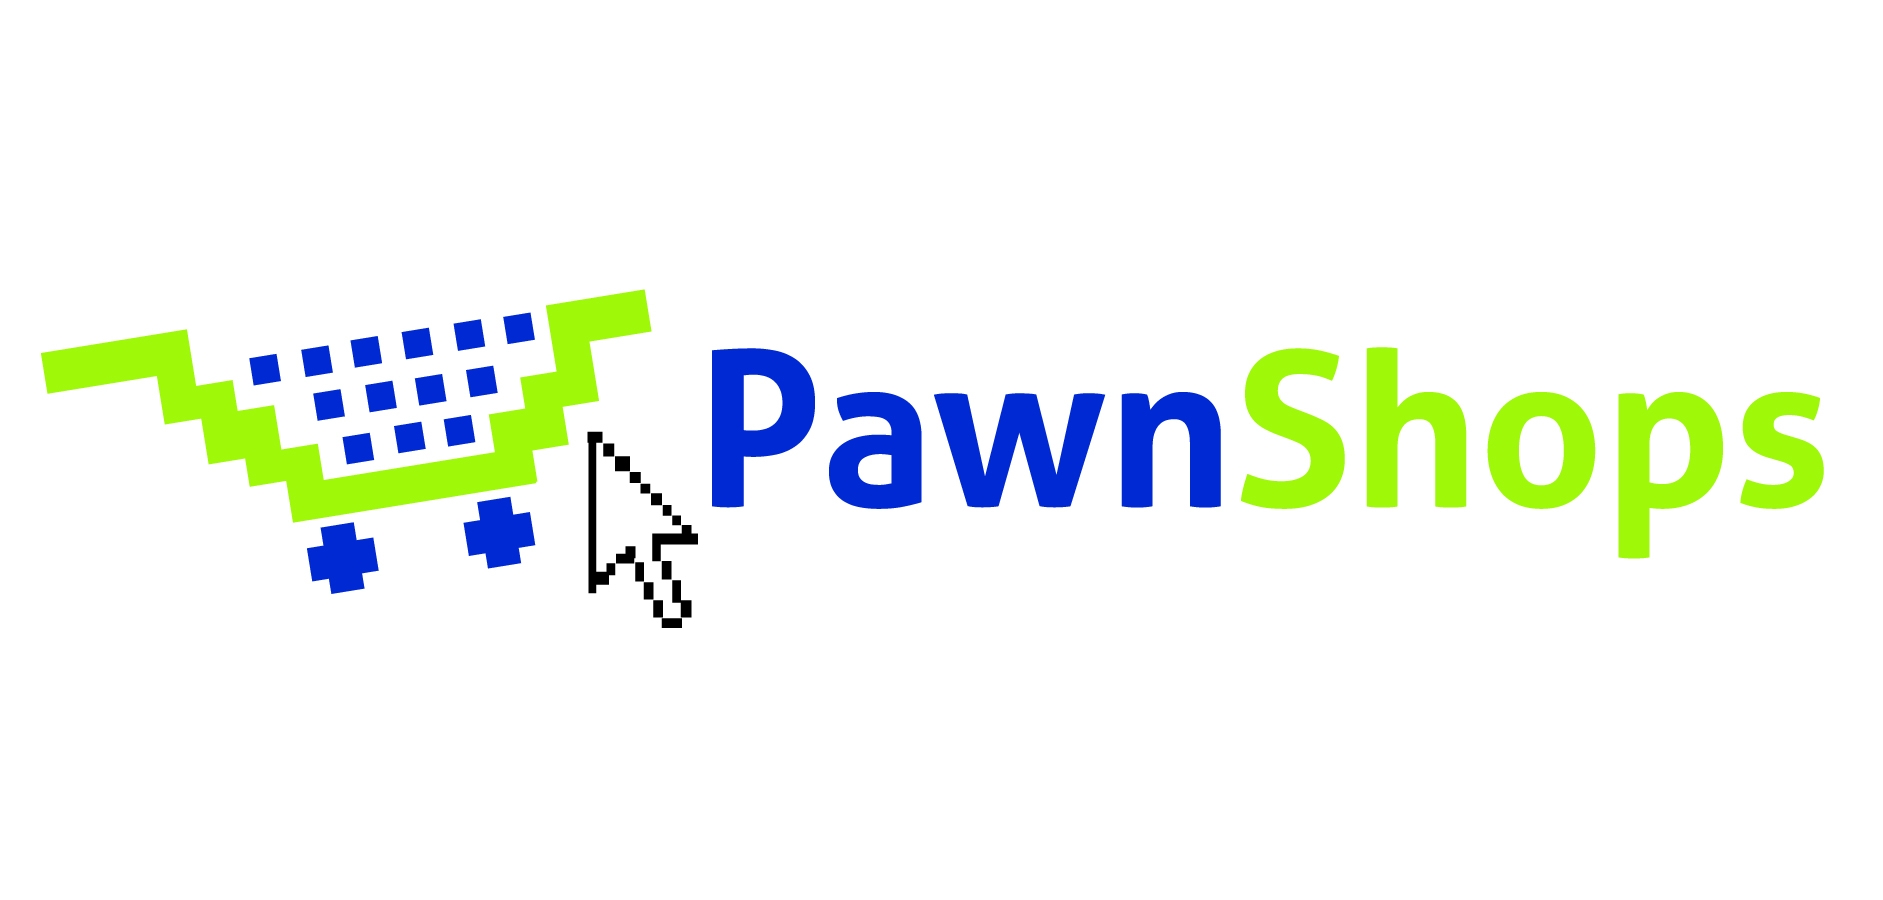 PAWN SHOP - Definição e sinônimos de pawn shop no dicionário inglês